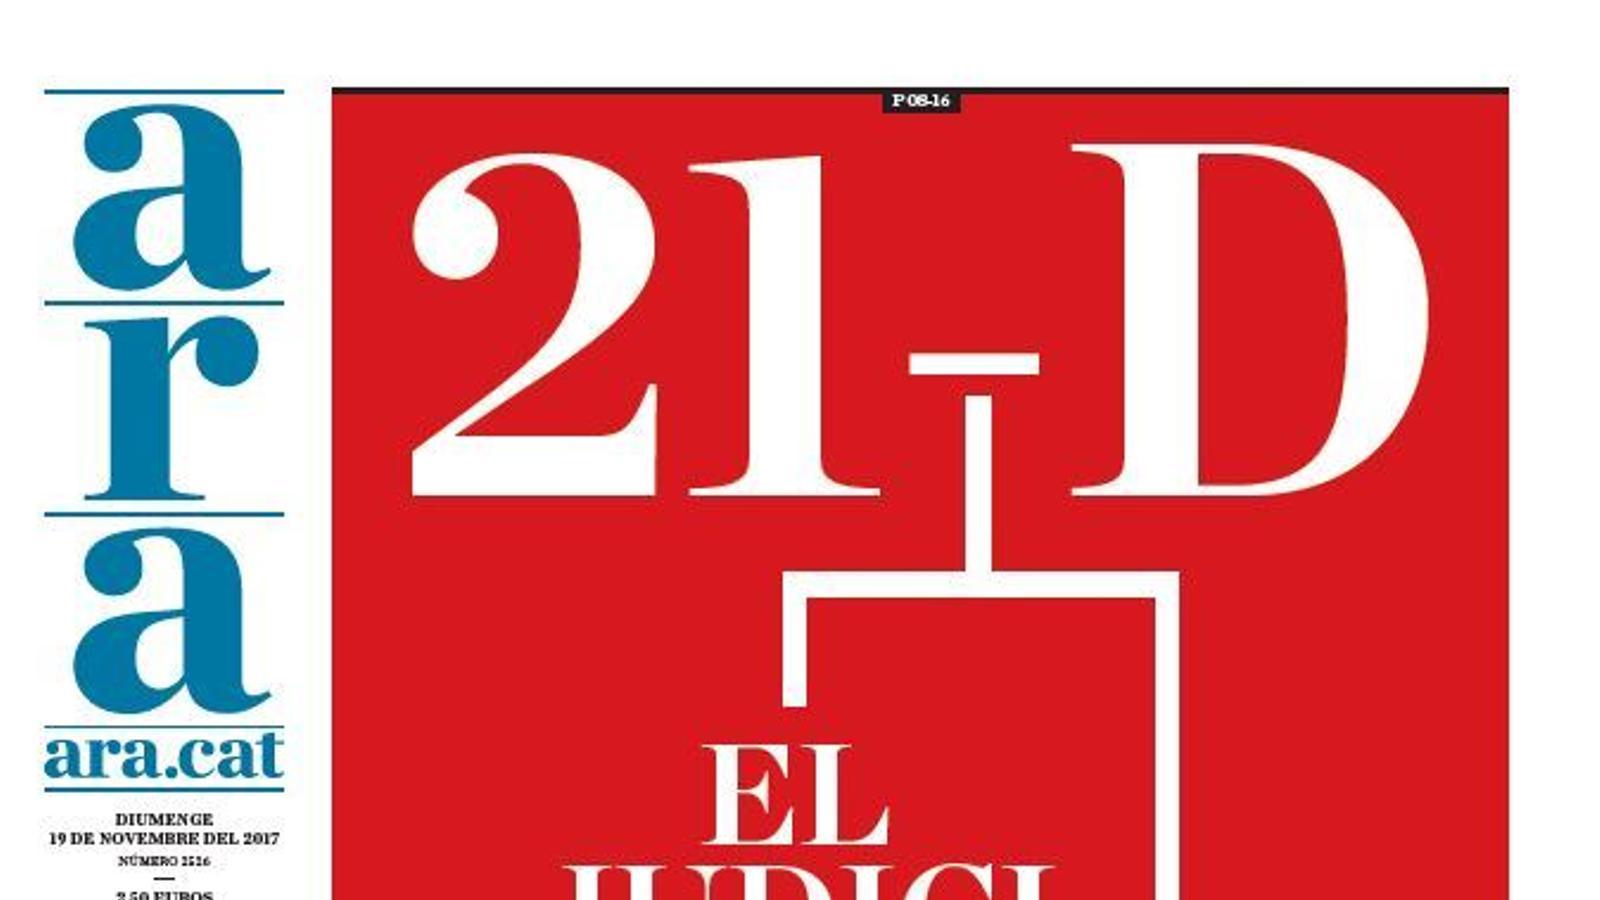 "21-D: el judici de les urnes", portada de l'ARA